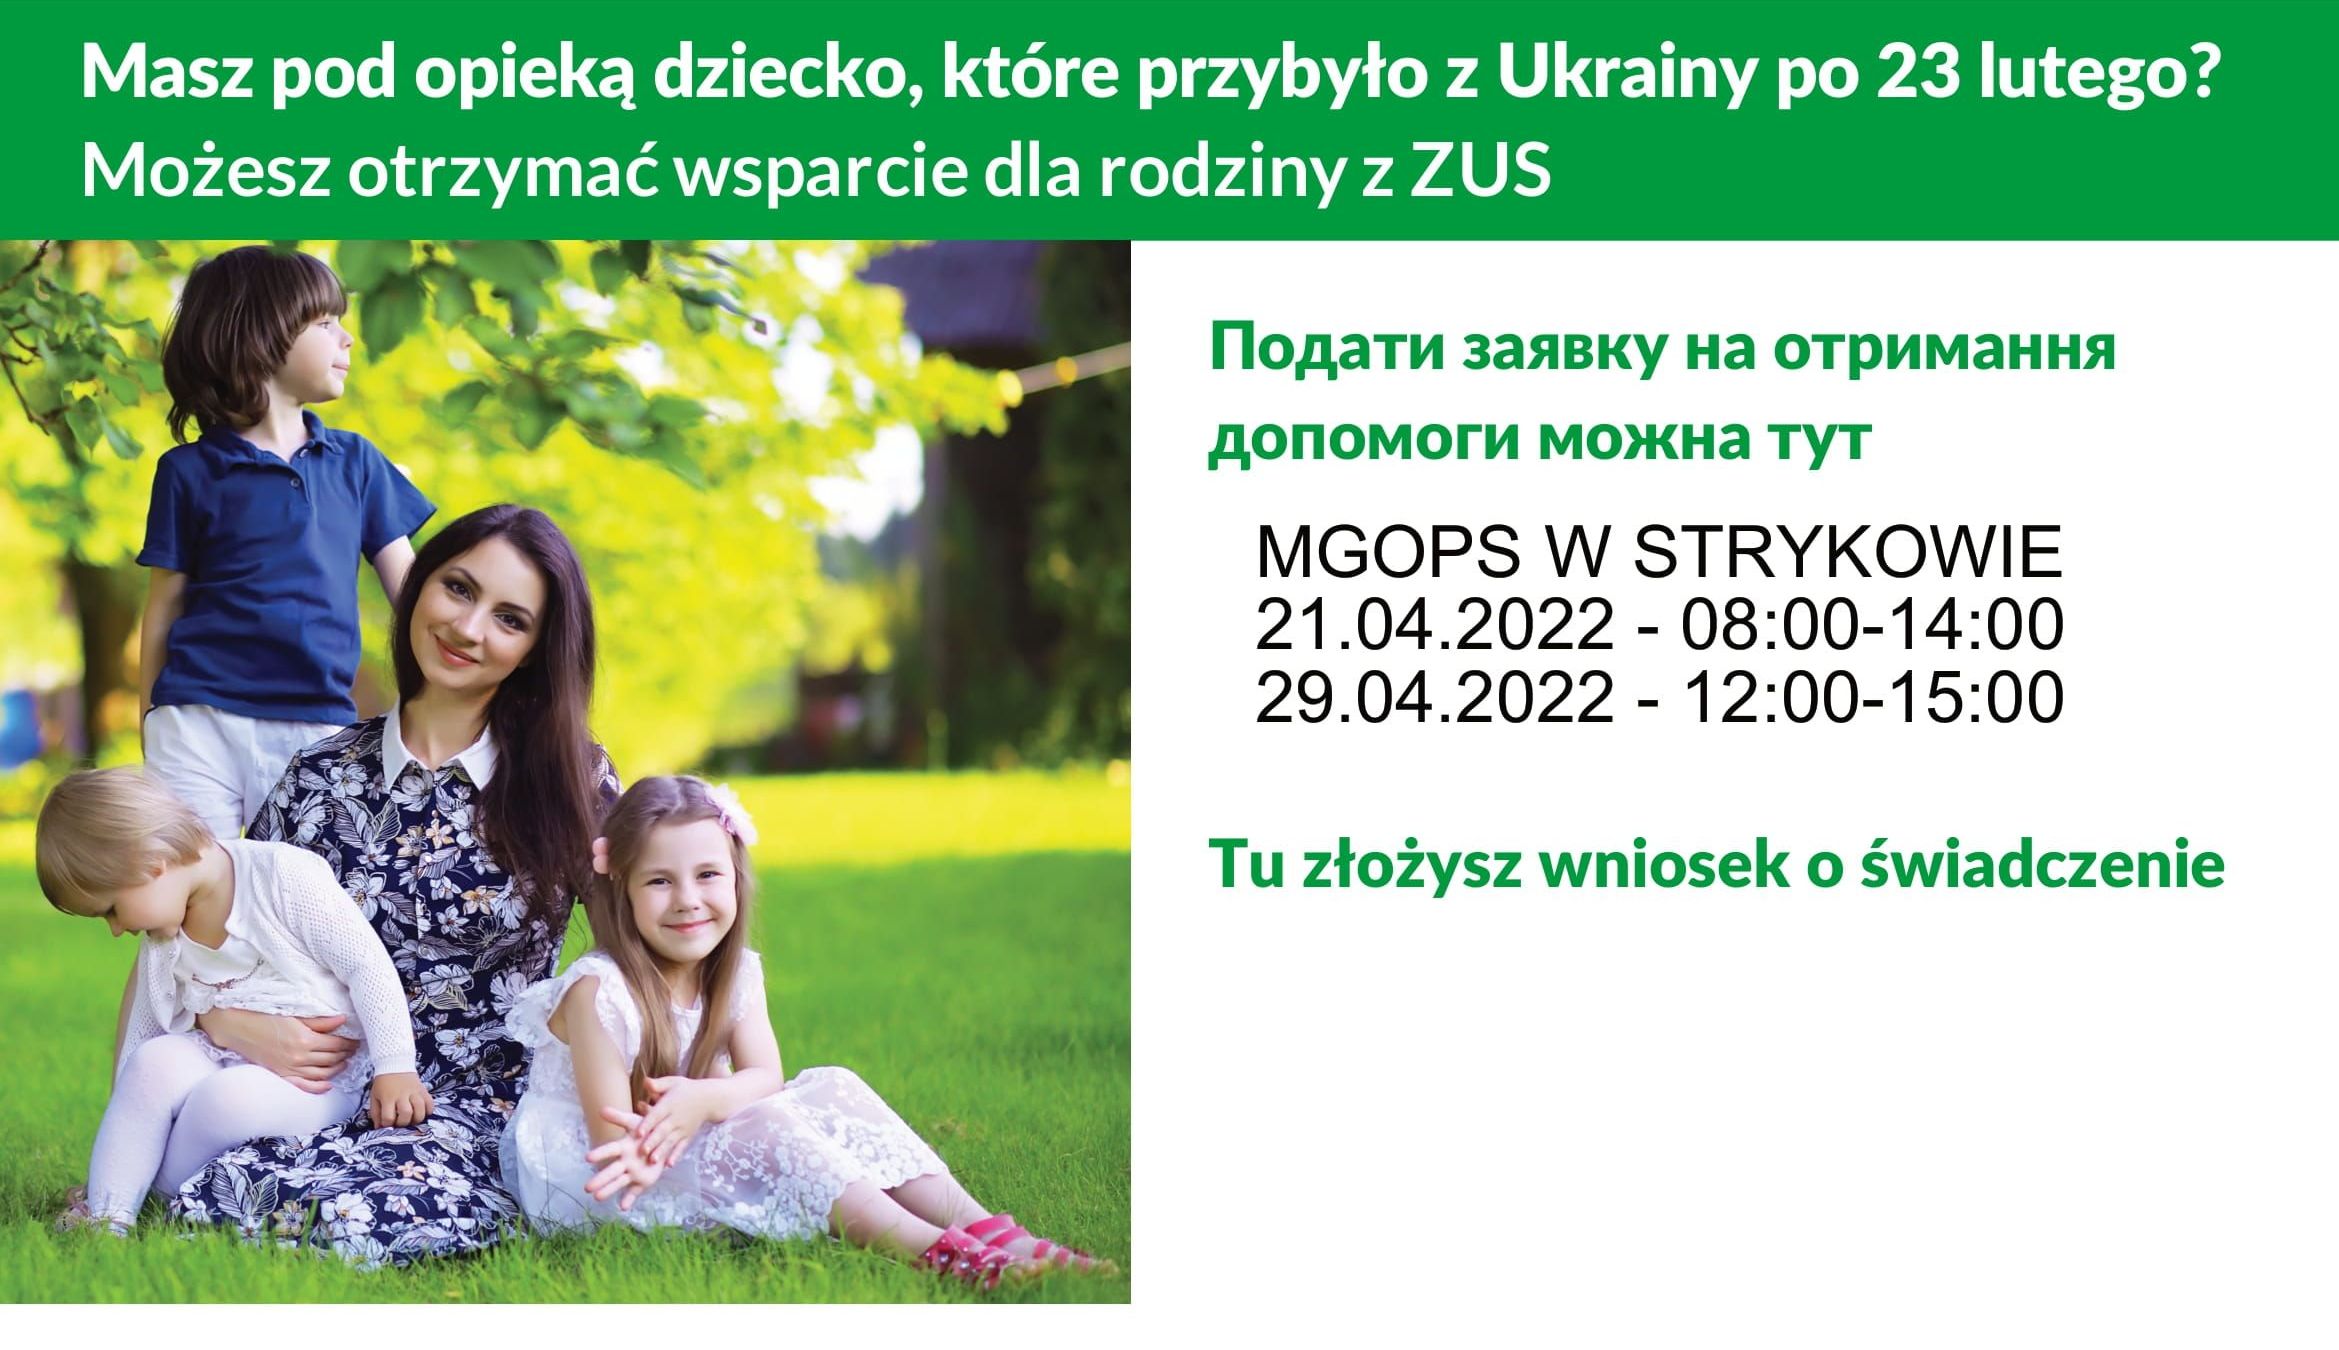 Pomoc obywatelom Ukrainy przy składaniu elektronicznych wniosków o 500+